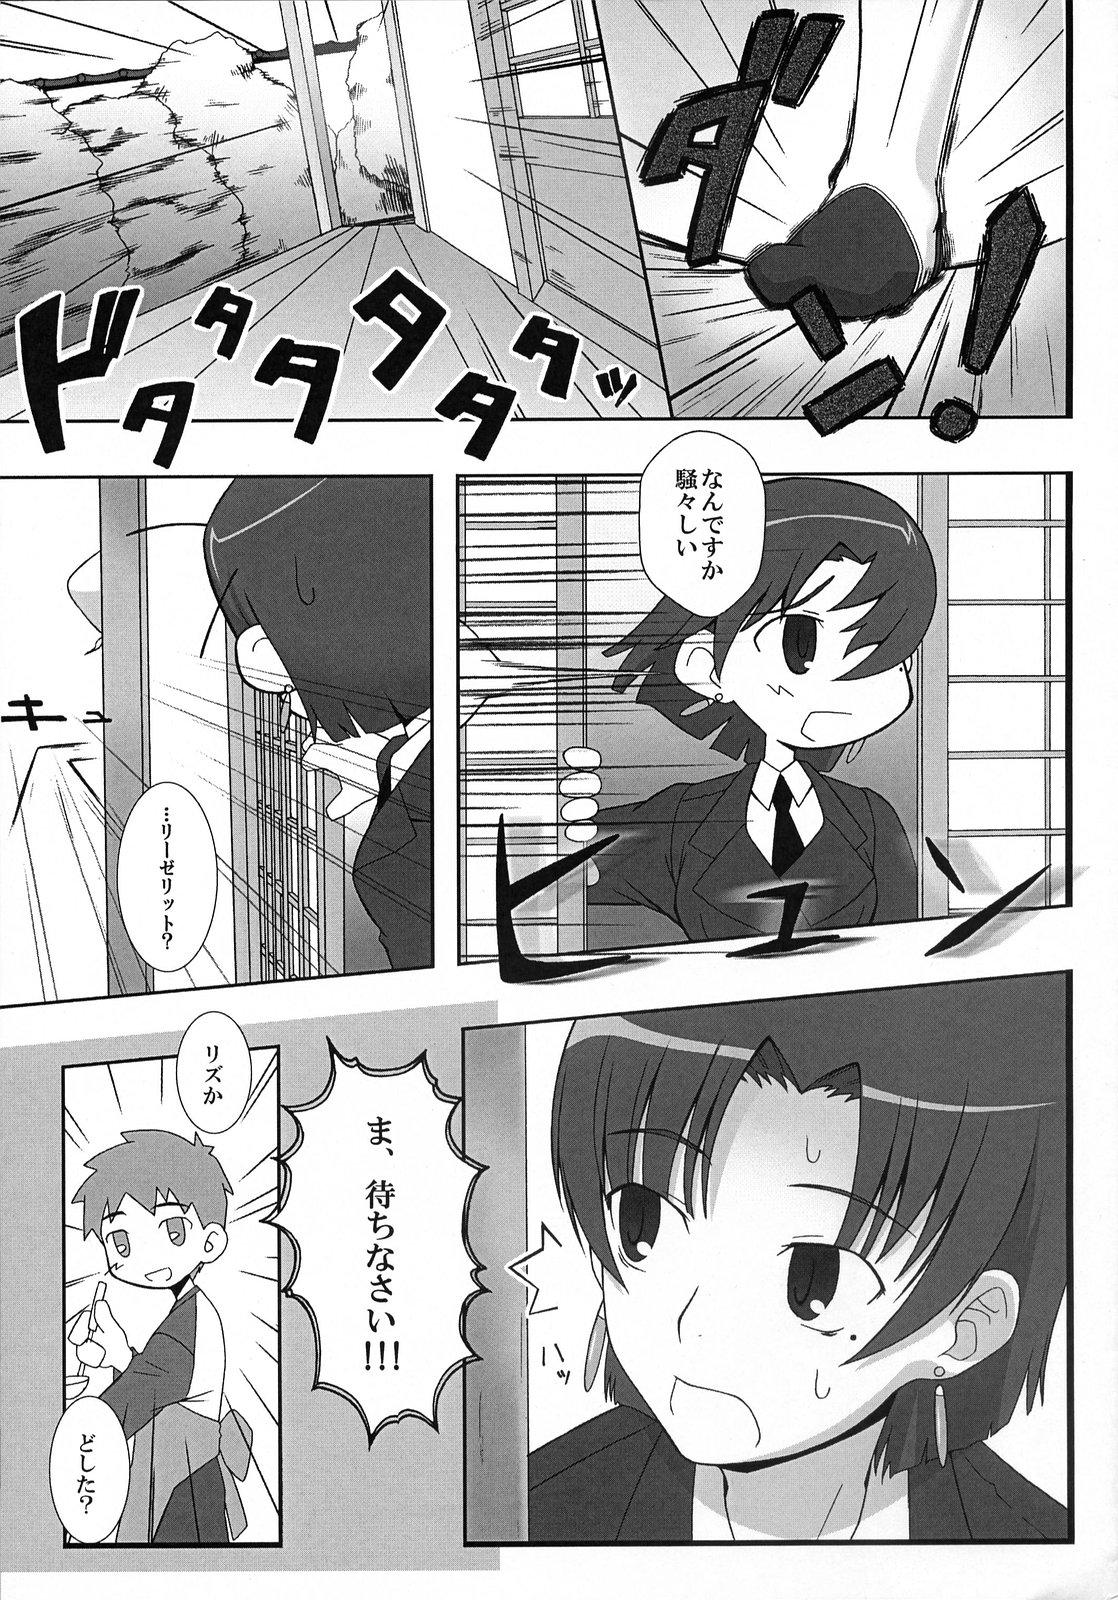 Pica (SC36) [Gachinko Shobou (Koban)] Yappari Leysritt (kyonyuu no hou)] wa eroi na. (Fate/hollow ataraxia) - Fate stay night Fate hollow ataraxia Stepmother - Page 3